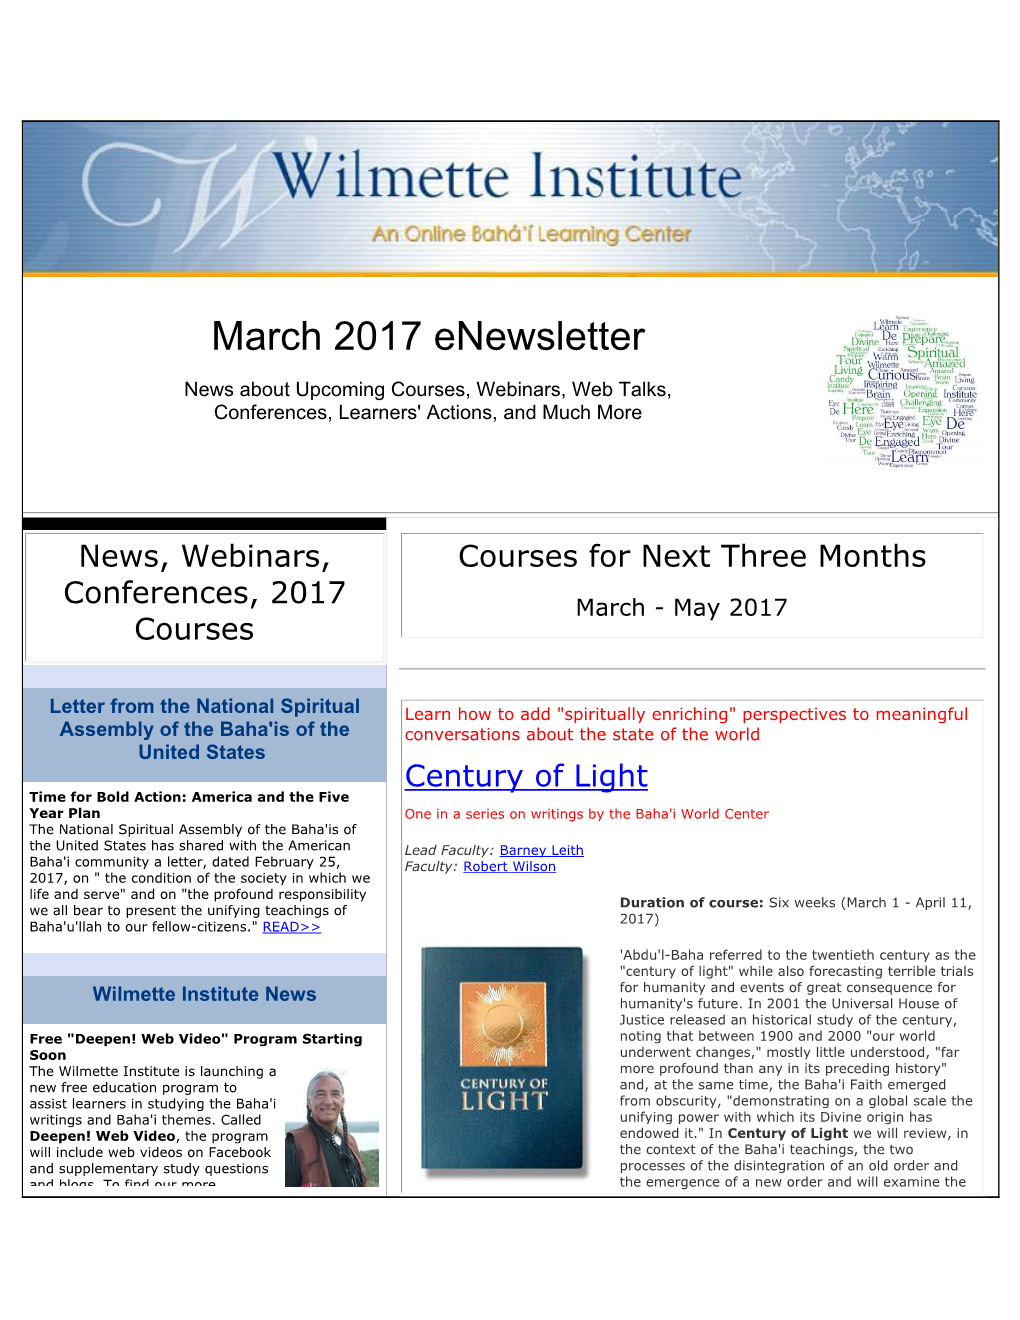 March 2017 Enewsletter